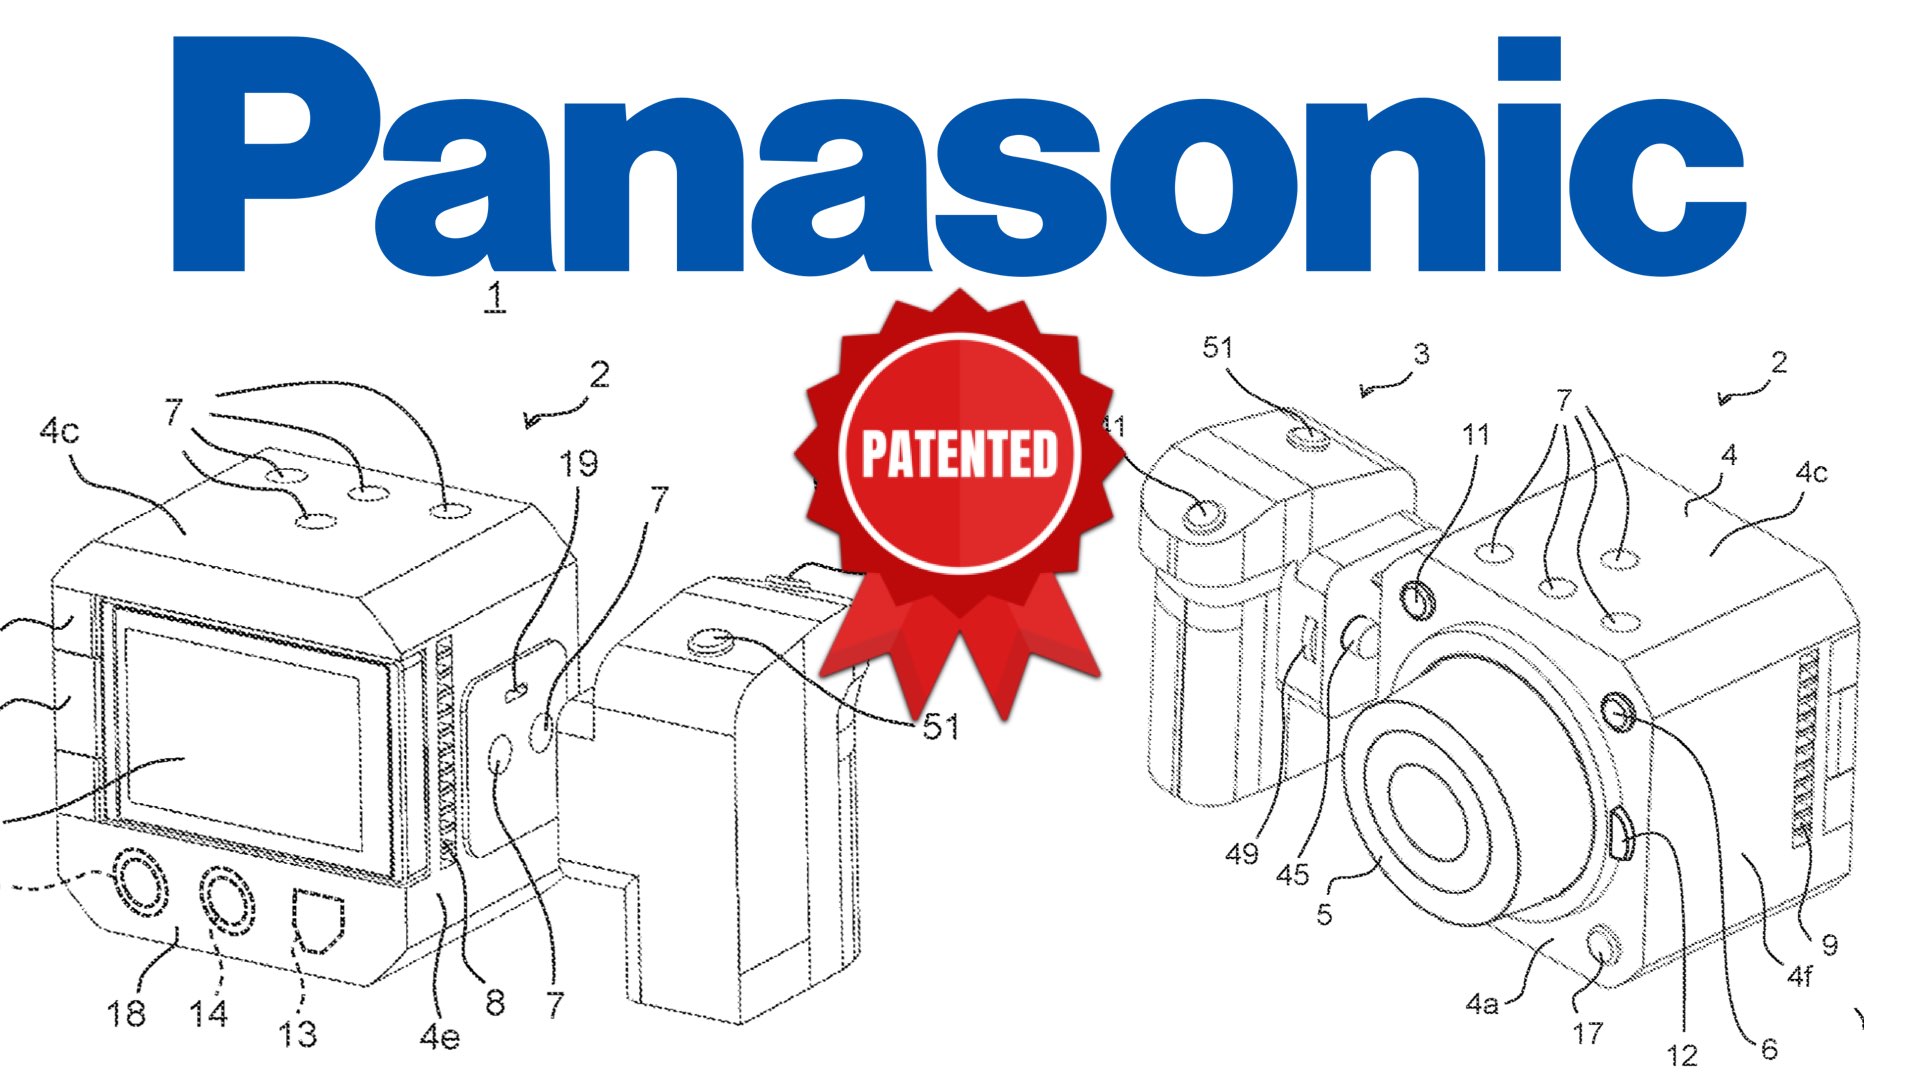 Panasonic Develops An Advanced Boxy-Style Cinema Camera